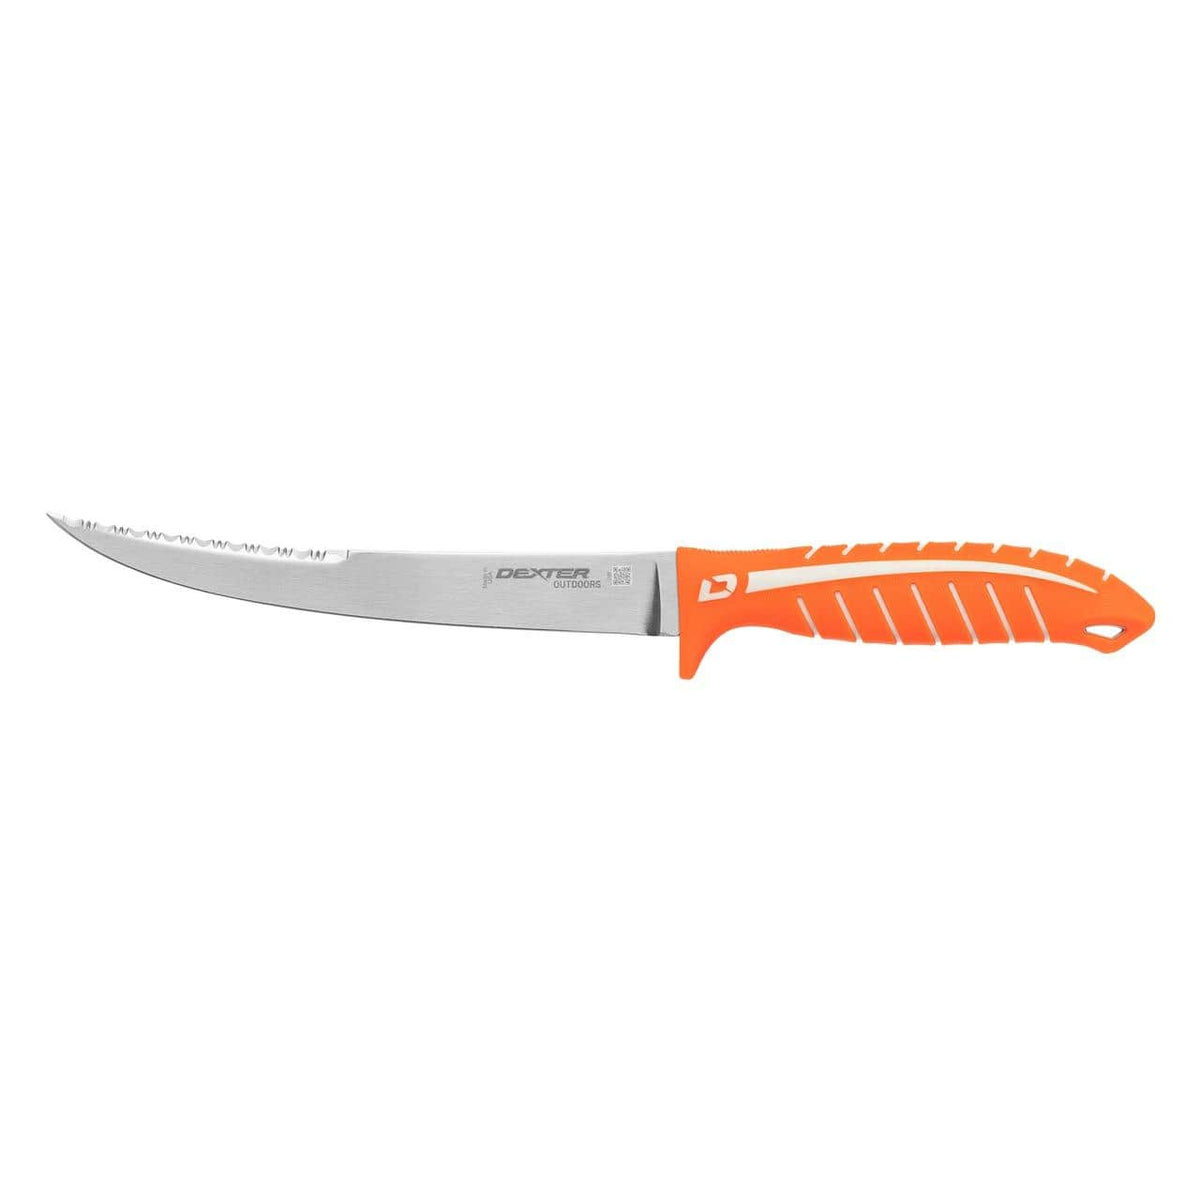 Dexter Dextreme Dual Edge Flexible Fillet Knife 7&quot; Blade